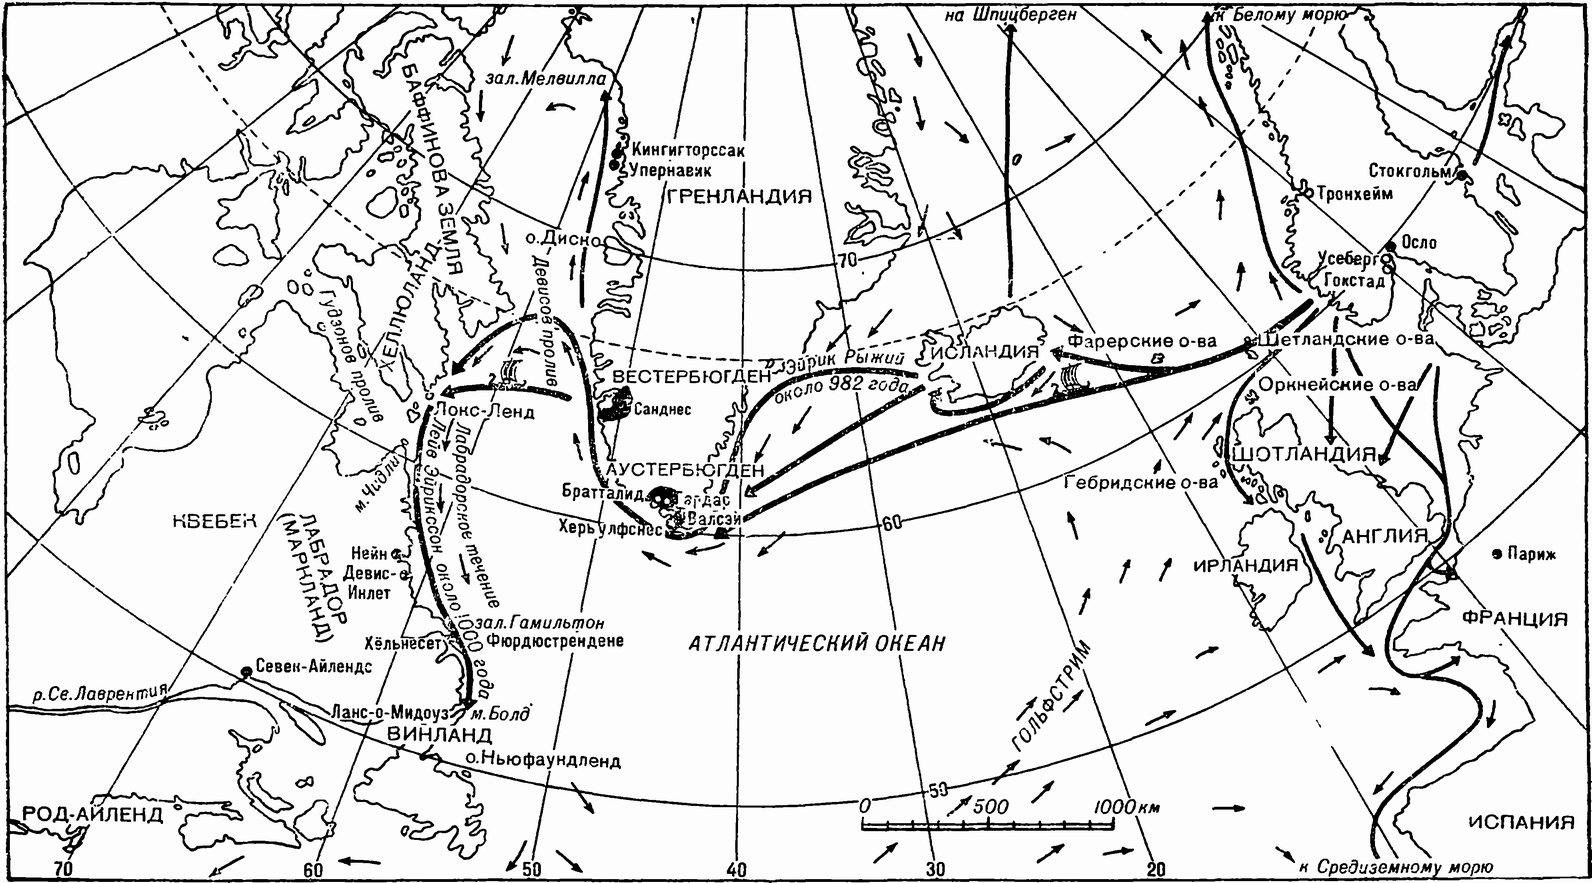 Обзорная карта маршрутов викингов. Показан и западный путь из Норвегии в Исландию, норманнские поселения в Гренландии и дальше до Северной Америки — в Хеллюланд, Маркланд и Винланд